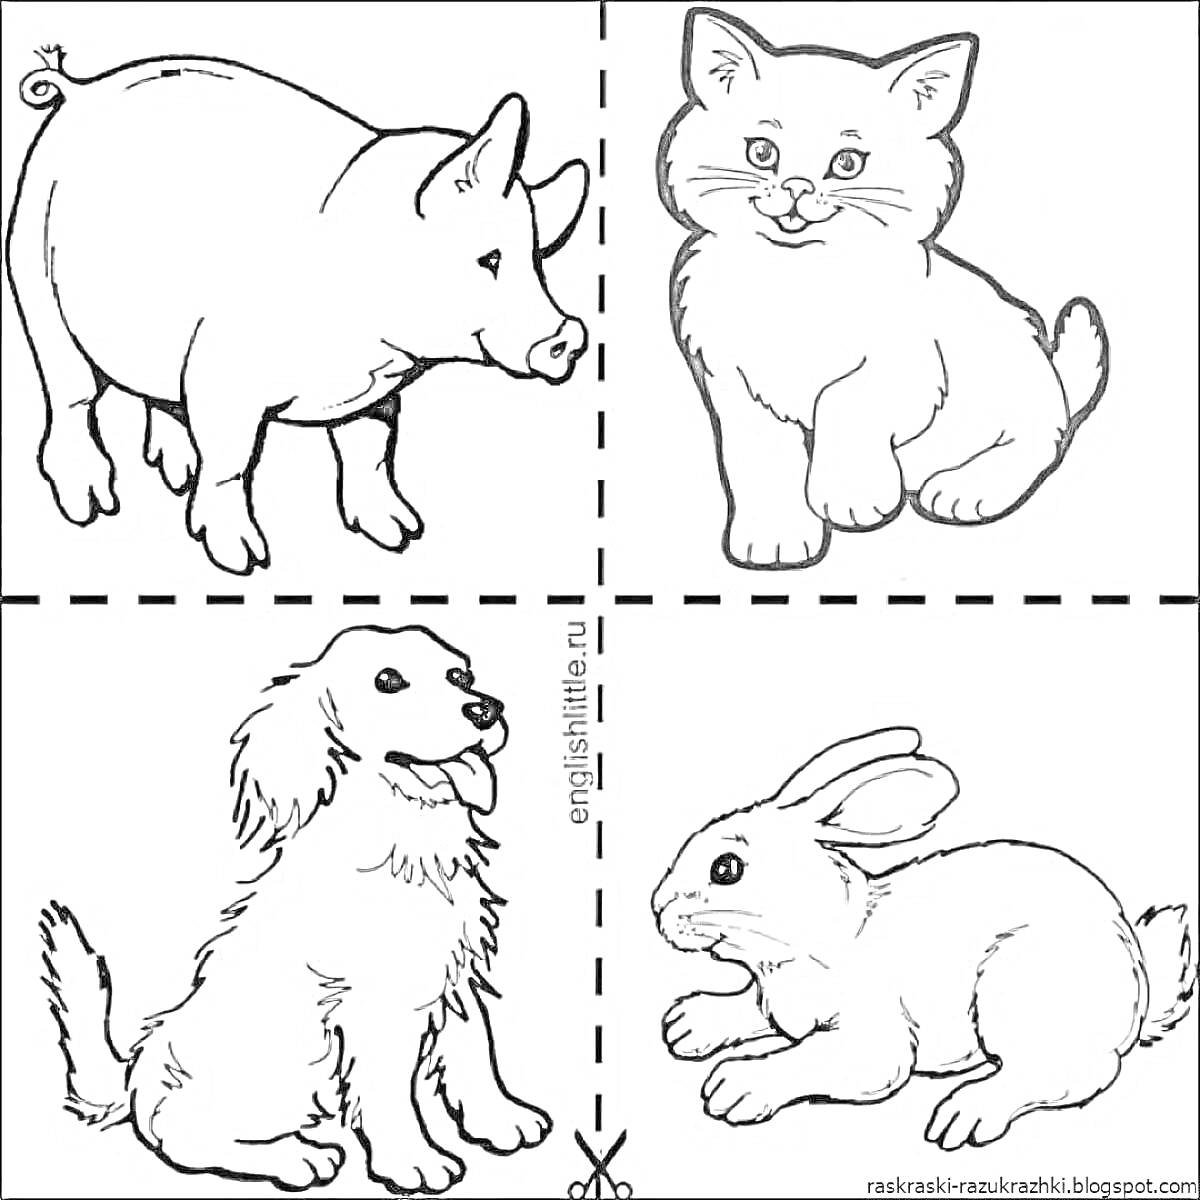 Раскраска Раскраска с изображением свиньи, котенка, собаки и кролика для детей 4-5 лет